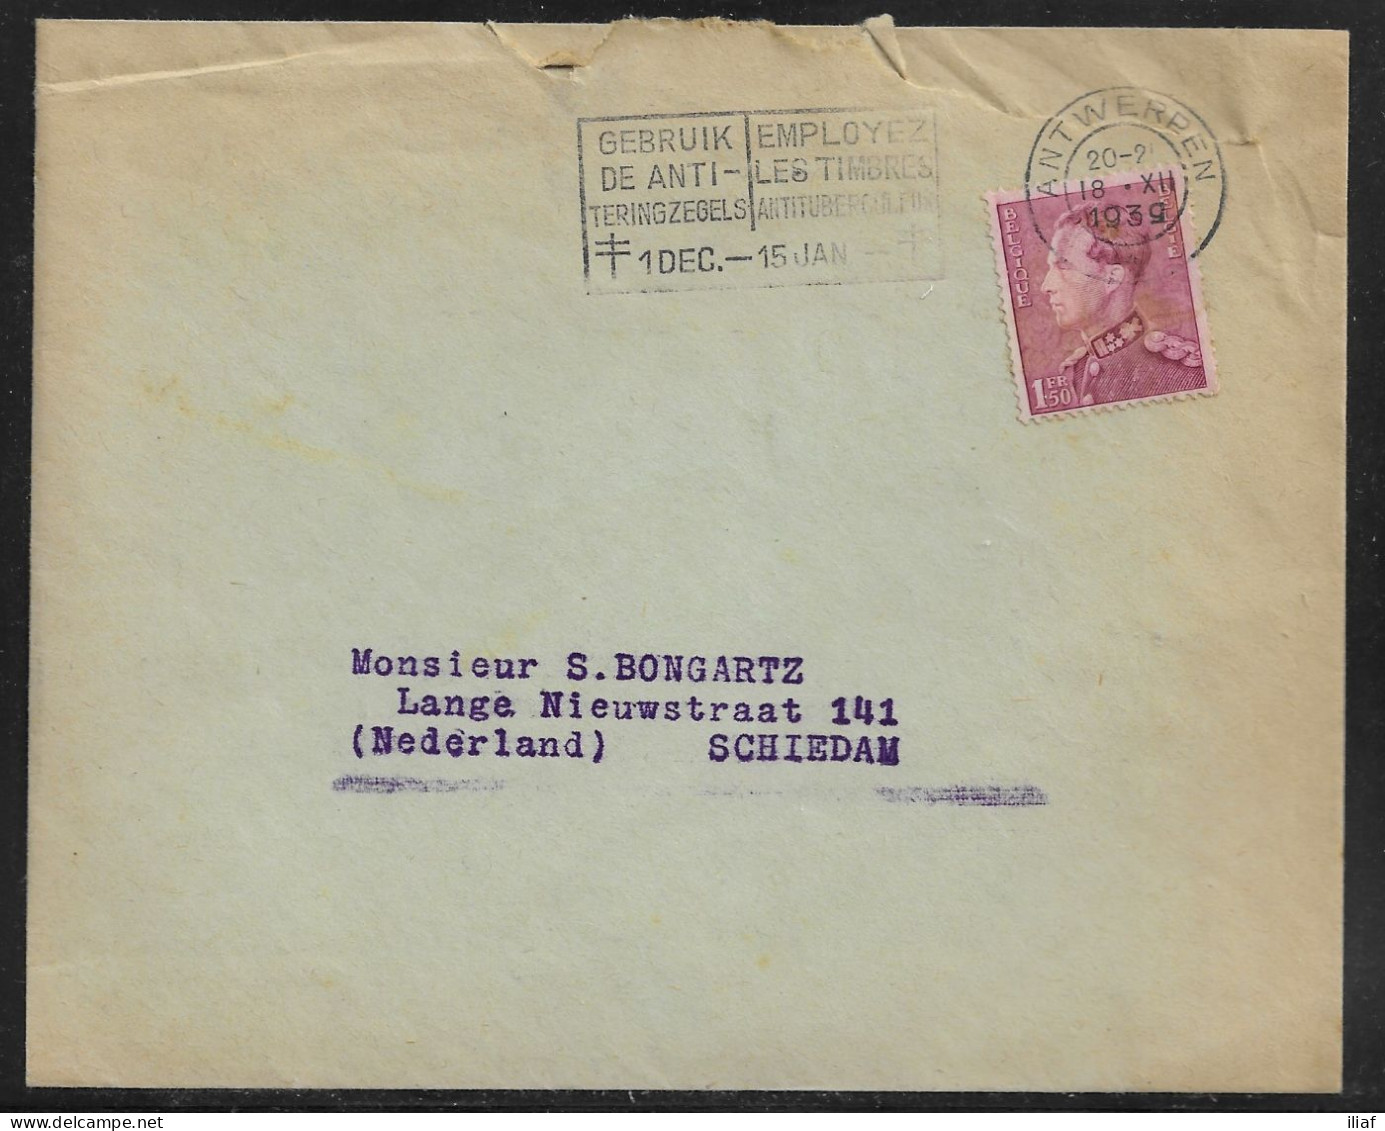 Belgium. Stamp Sc. 294 On Commercial Letter, Sent From Antwerpen On 18.12.1939 For Schiedam Netherlands - 1936-51 Poortman